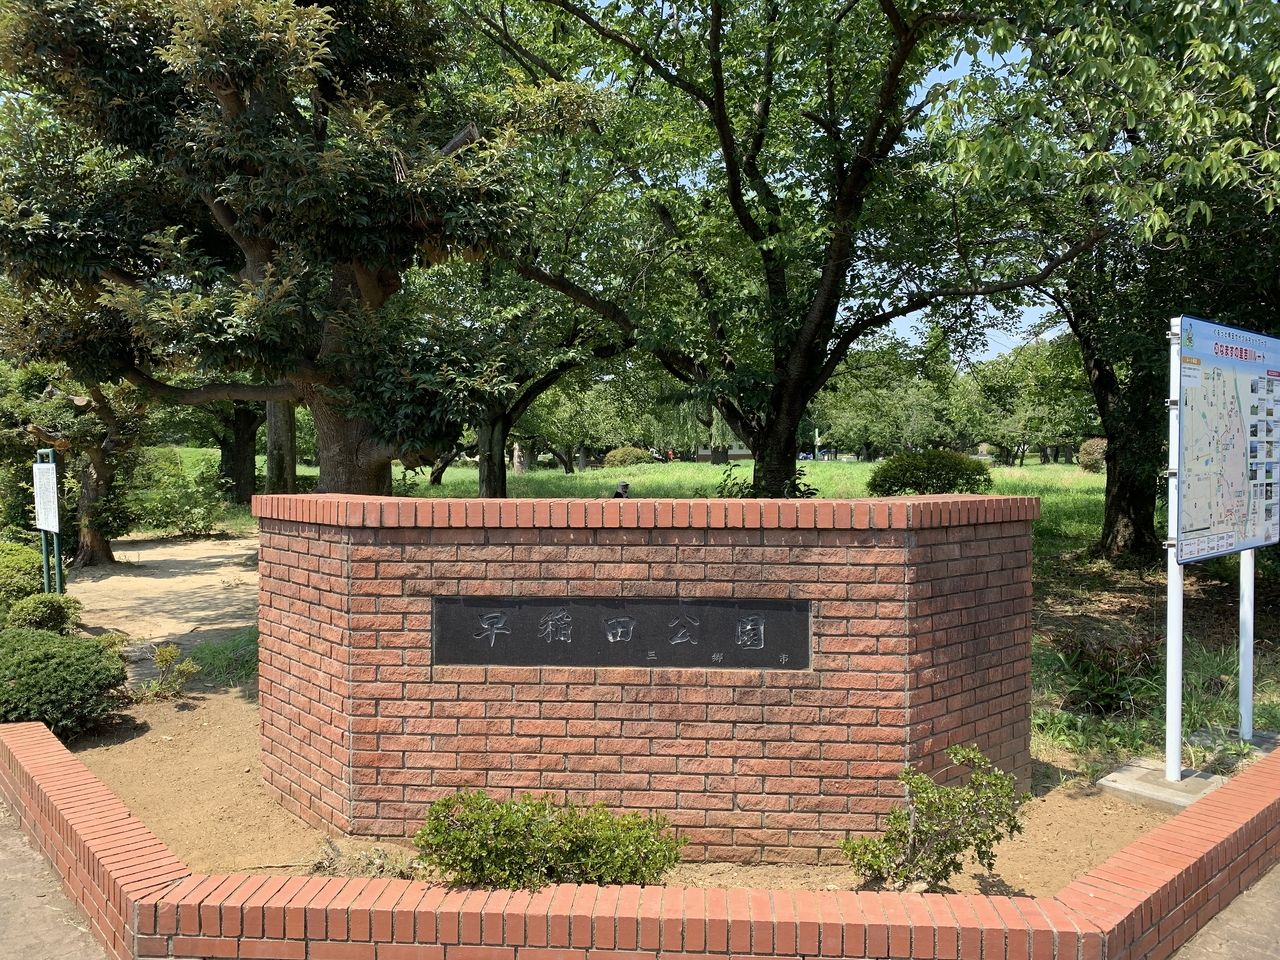 こんにちは、みさと不動産プラスの中原です。今回は「早稲田公園」をご紹介いたします。樹木の多い公園でテニスコートもあります。小学生・中学生などの子供達の憩いの場です。